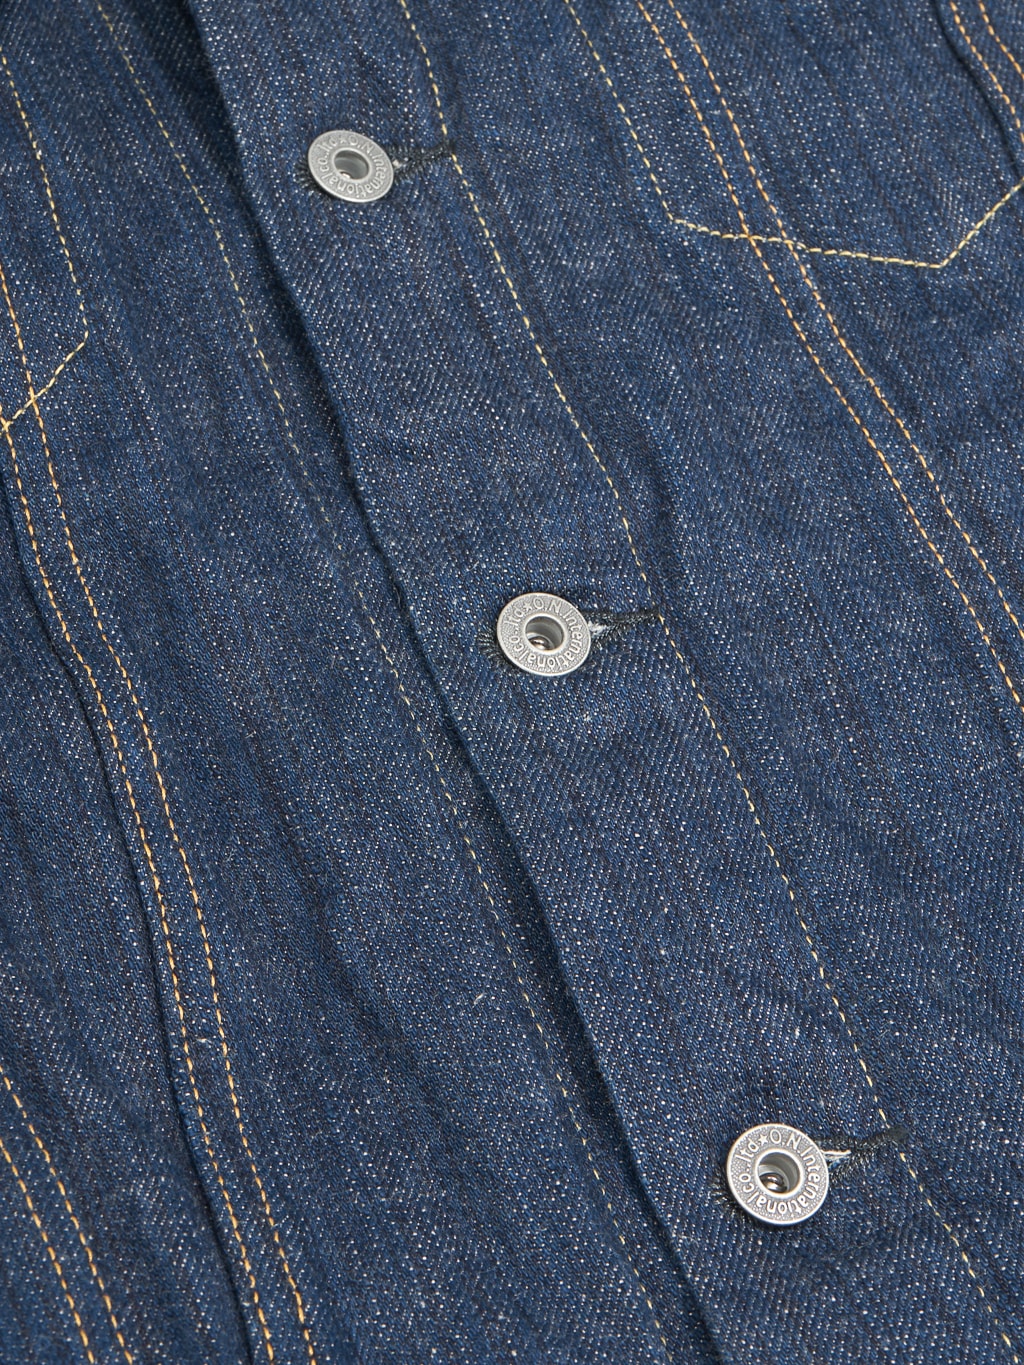 oni denim kiwami 16oz natural indigo type III jacket buttons